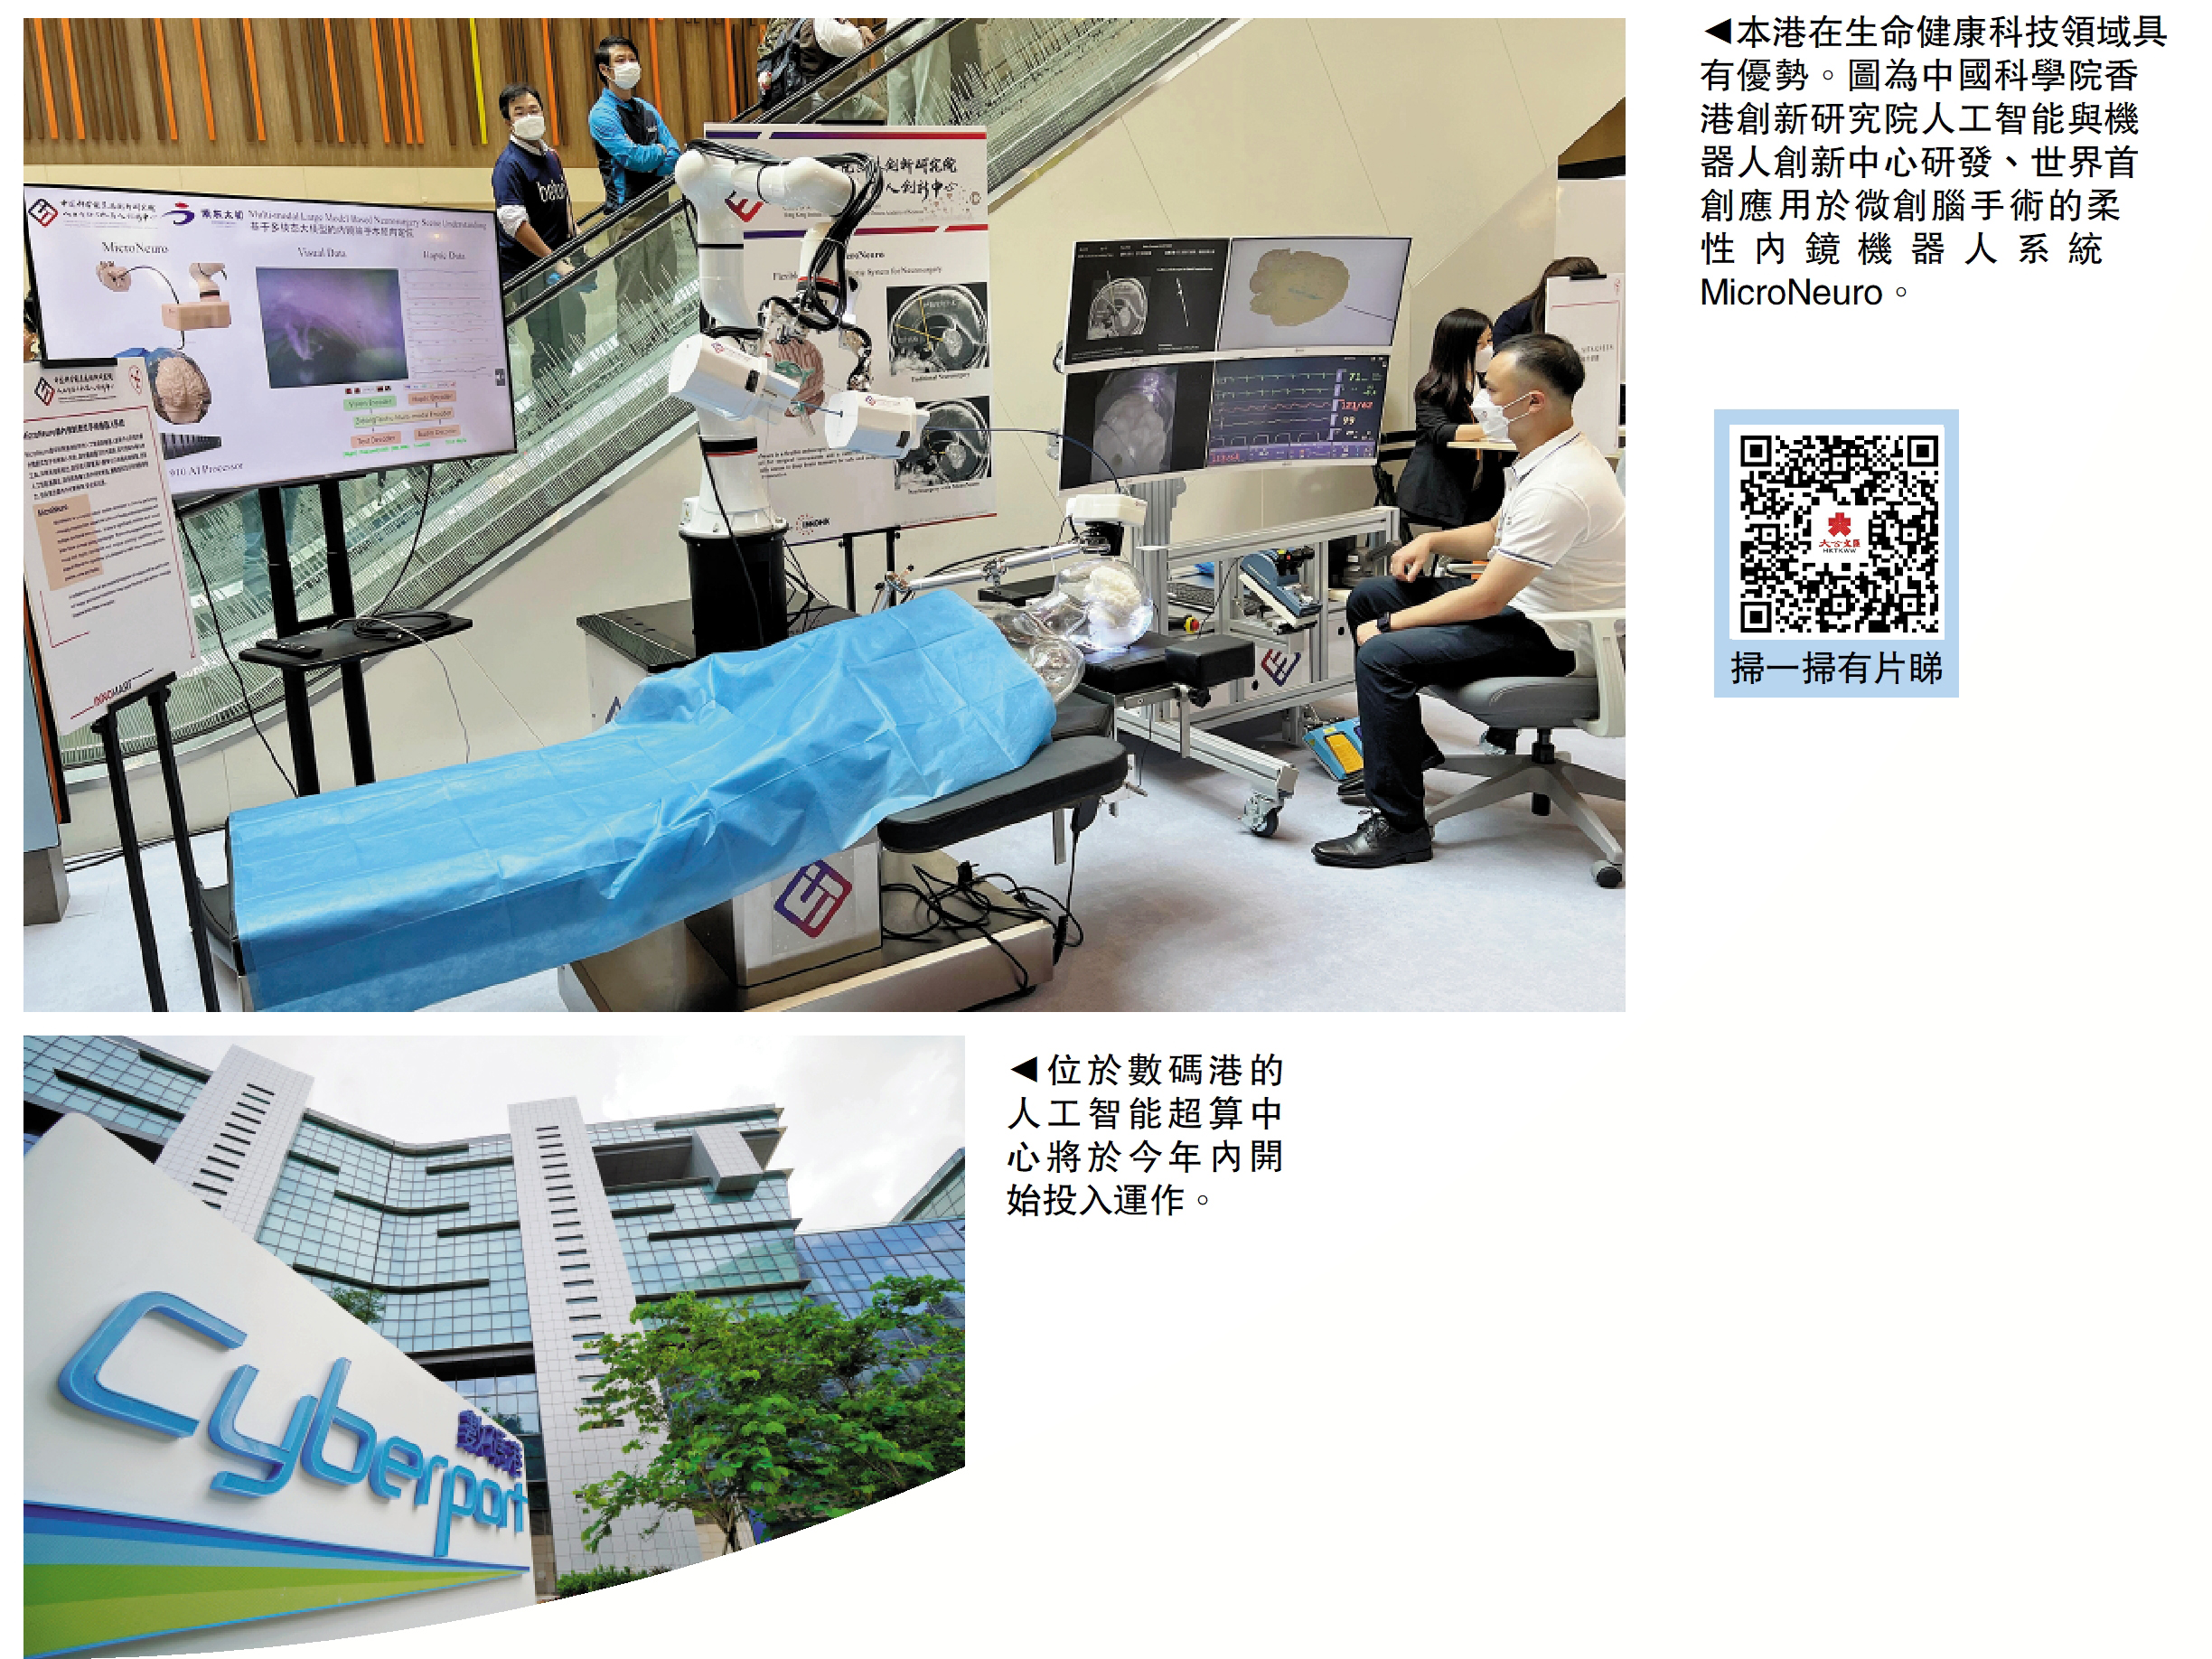 　　上圖：本港在生命健康科技領域具有優勢。圖為中國科學院香港創新研究院人工智能與機器人創新中心研發、世界首創應用於微創腦手術的柔性內鏡機器人系統MicroNeuro。下圖：位於數碼港的人工智能超算中心將於今年內開始投入運作。